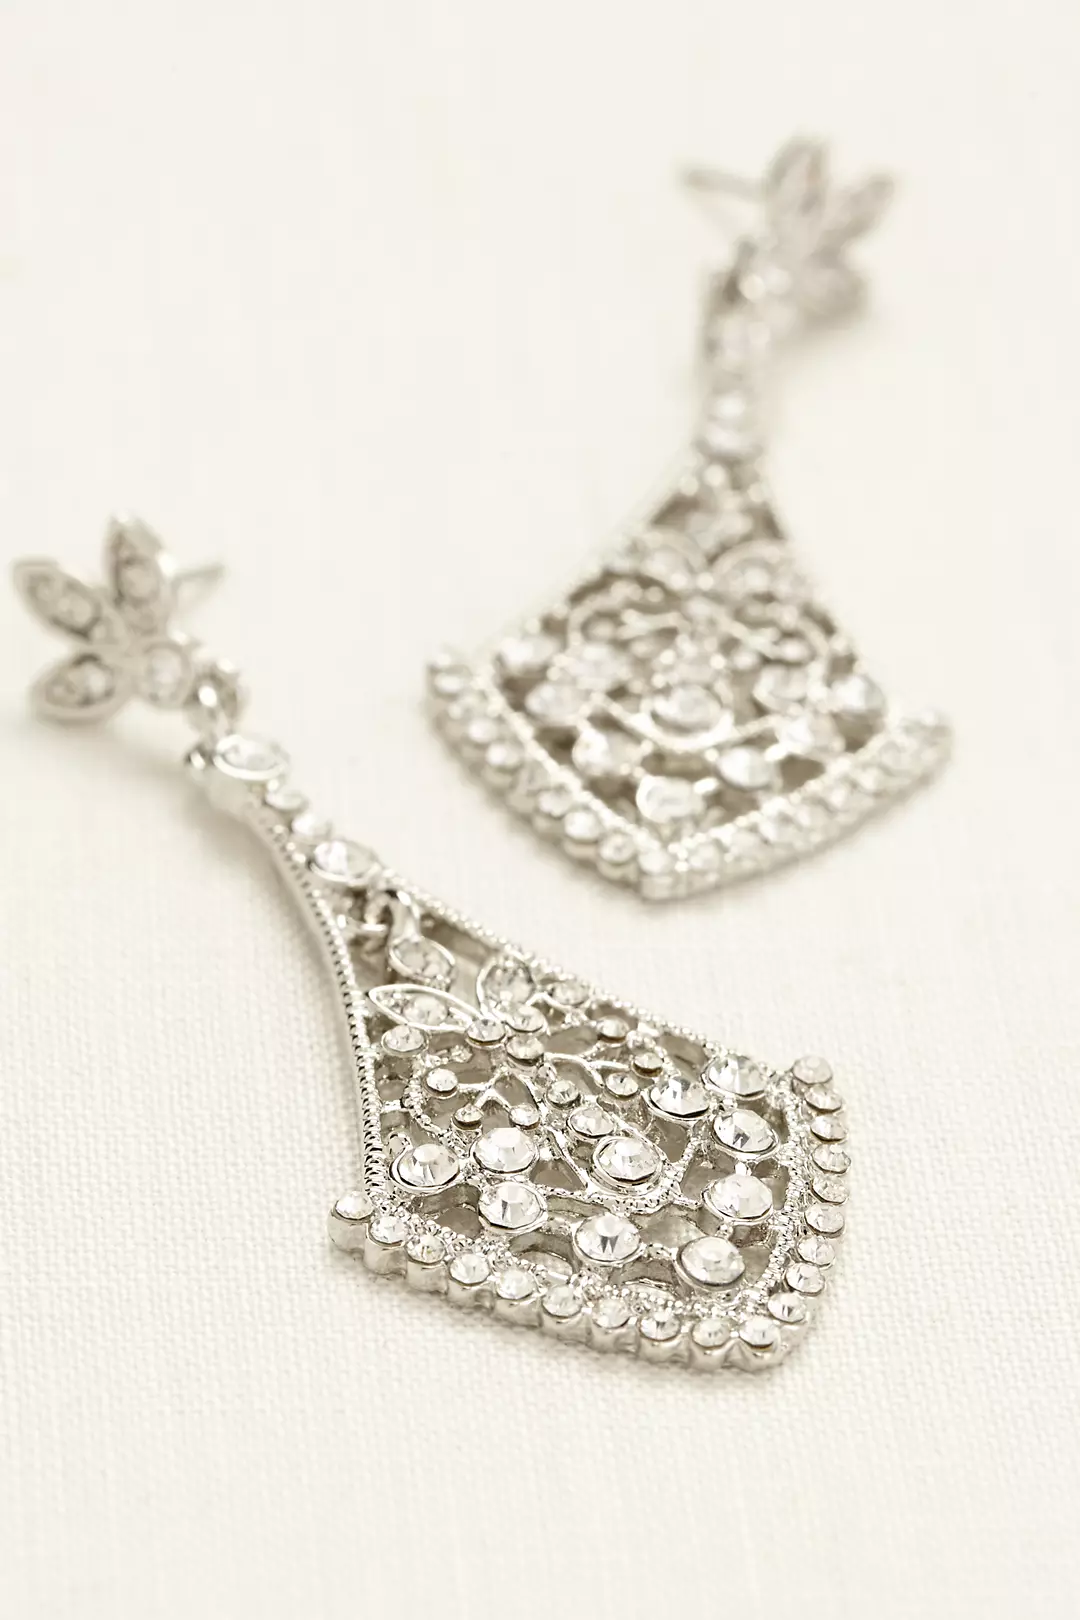 Crystal Chandelier Earrings Image